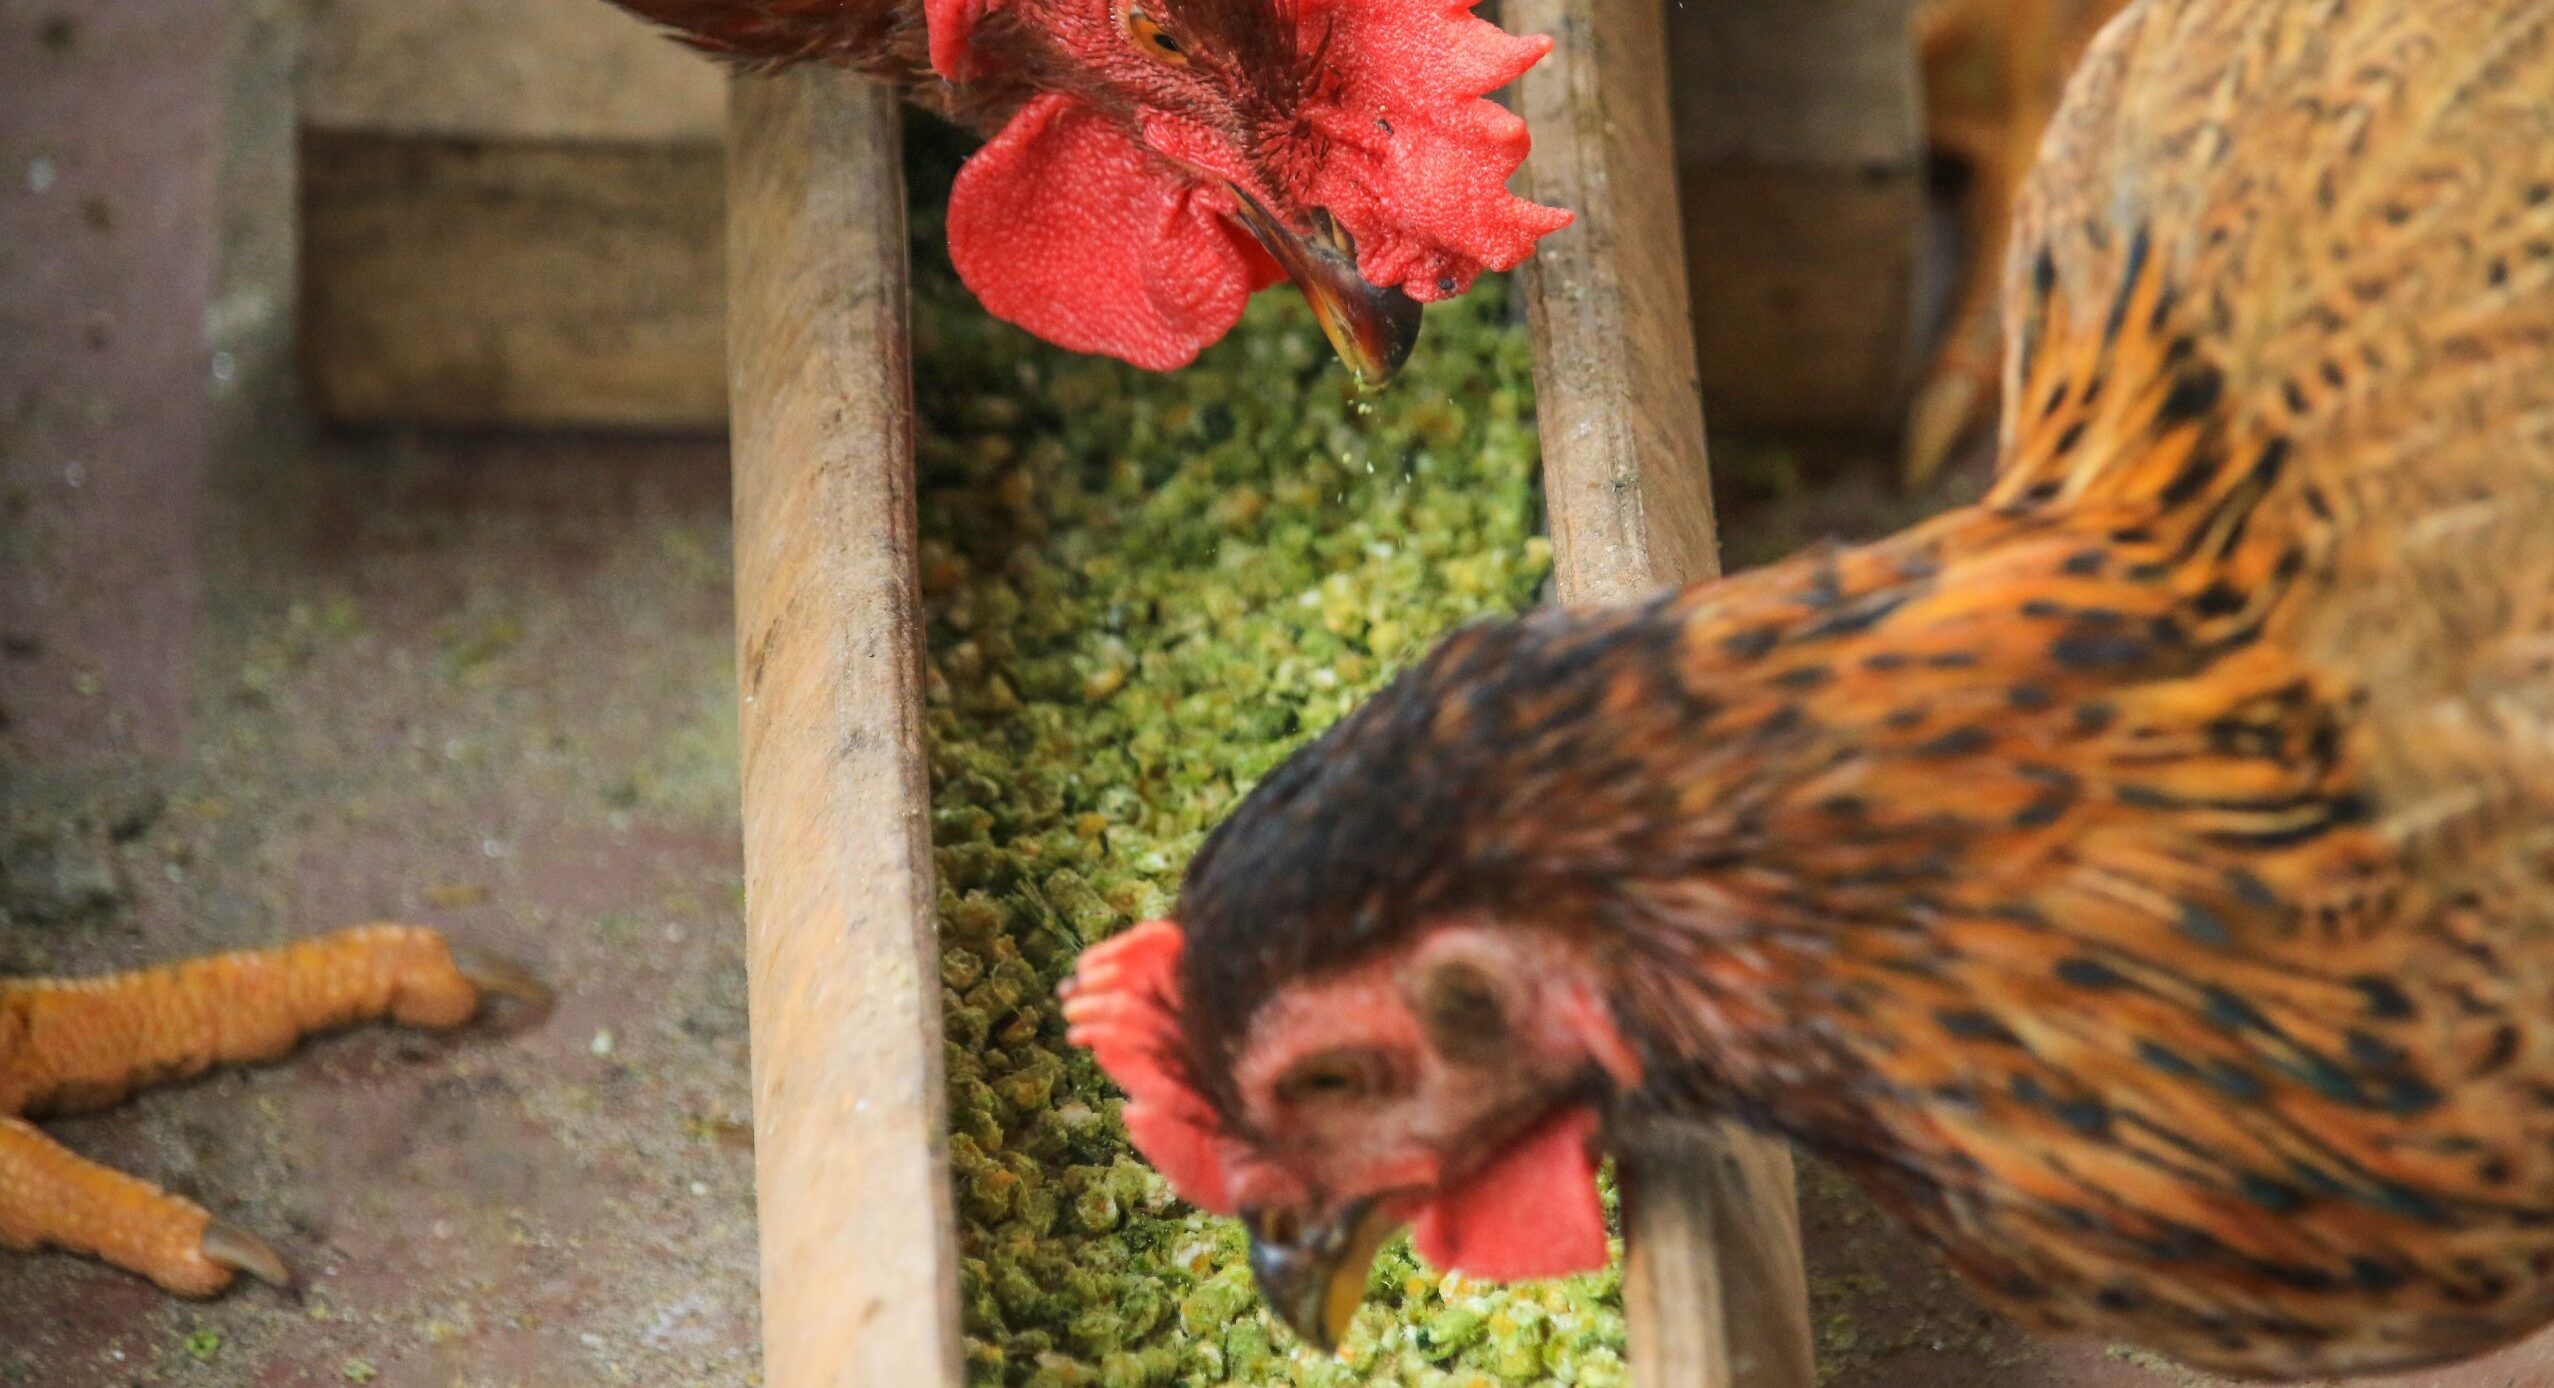 Thức ăn hữu cơ trộn thêm thảo dược xay nhuyễn giúp gà tăng đề kháng